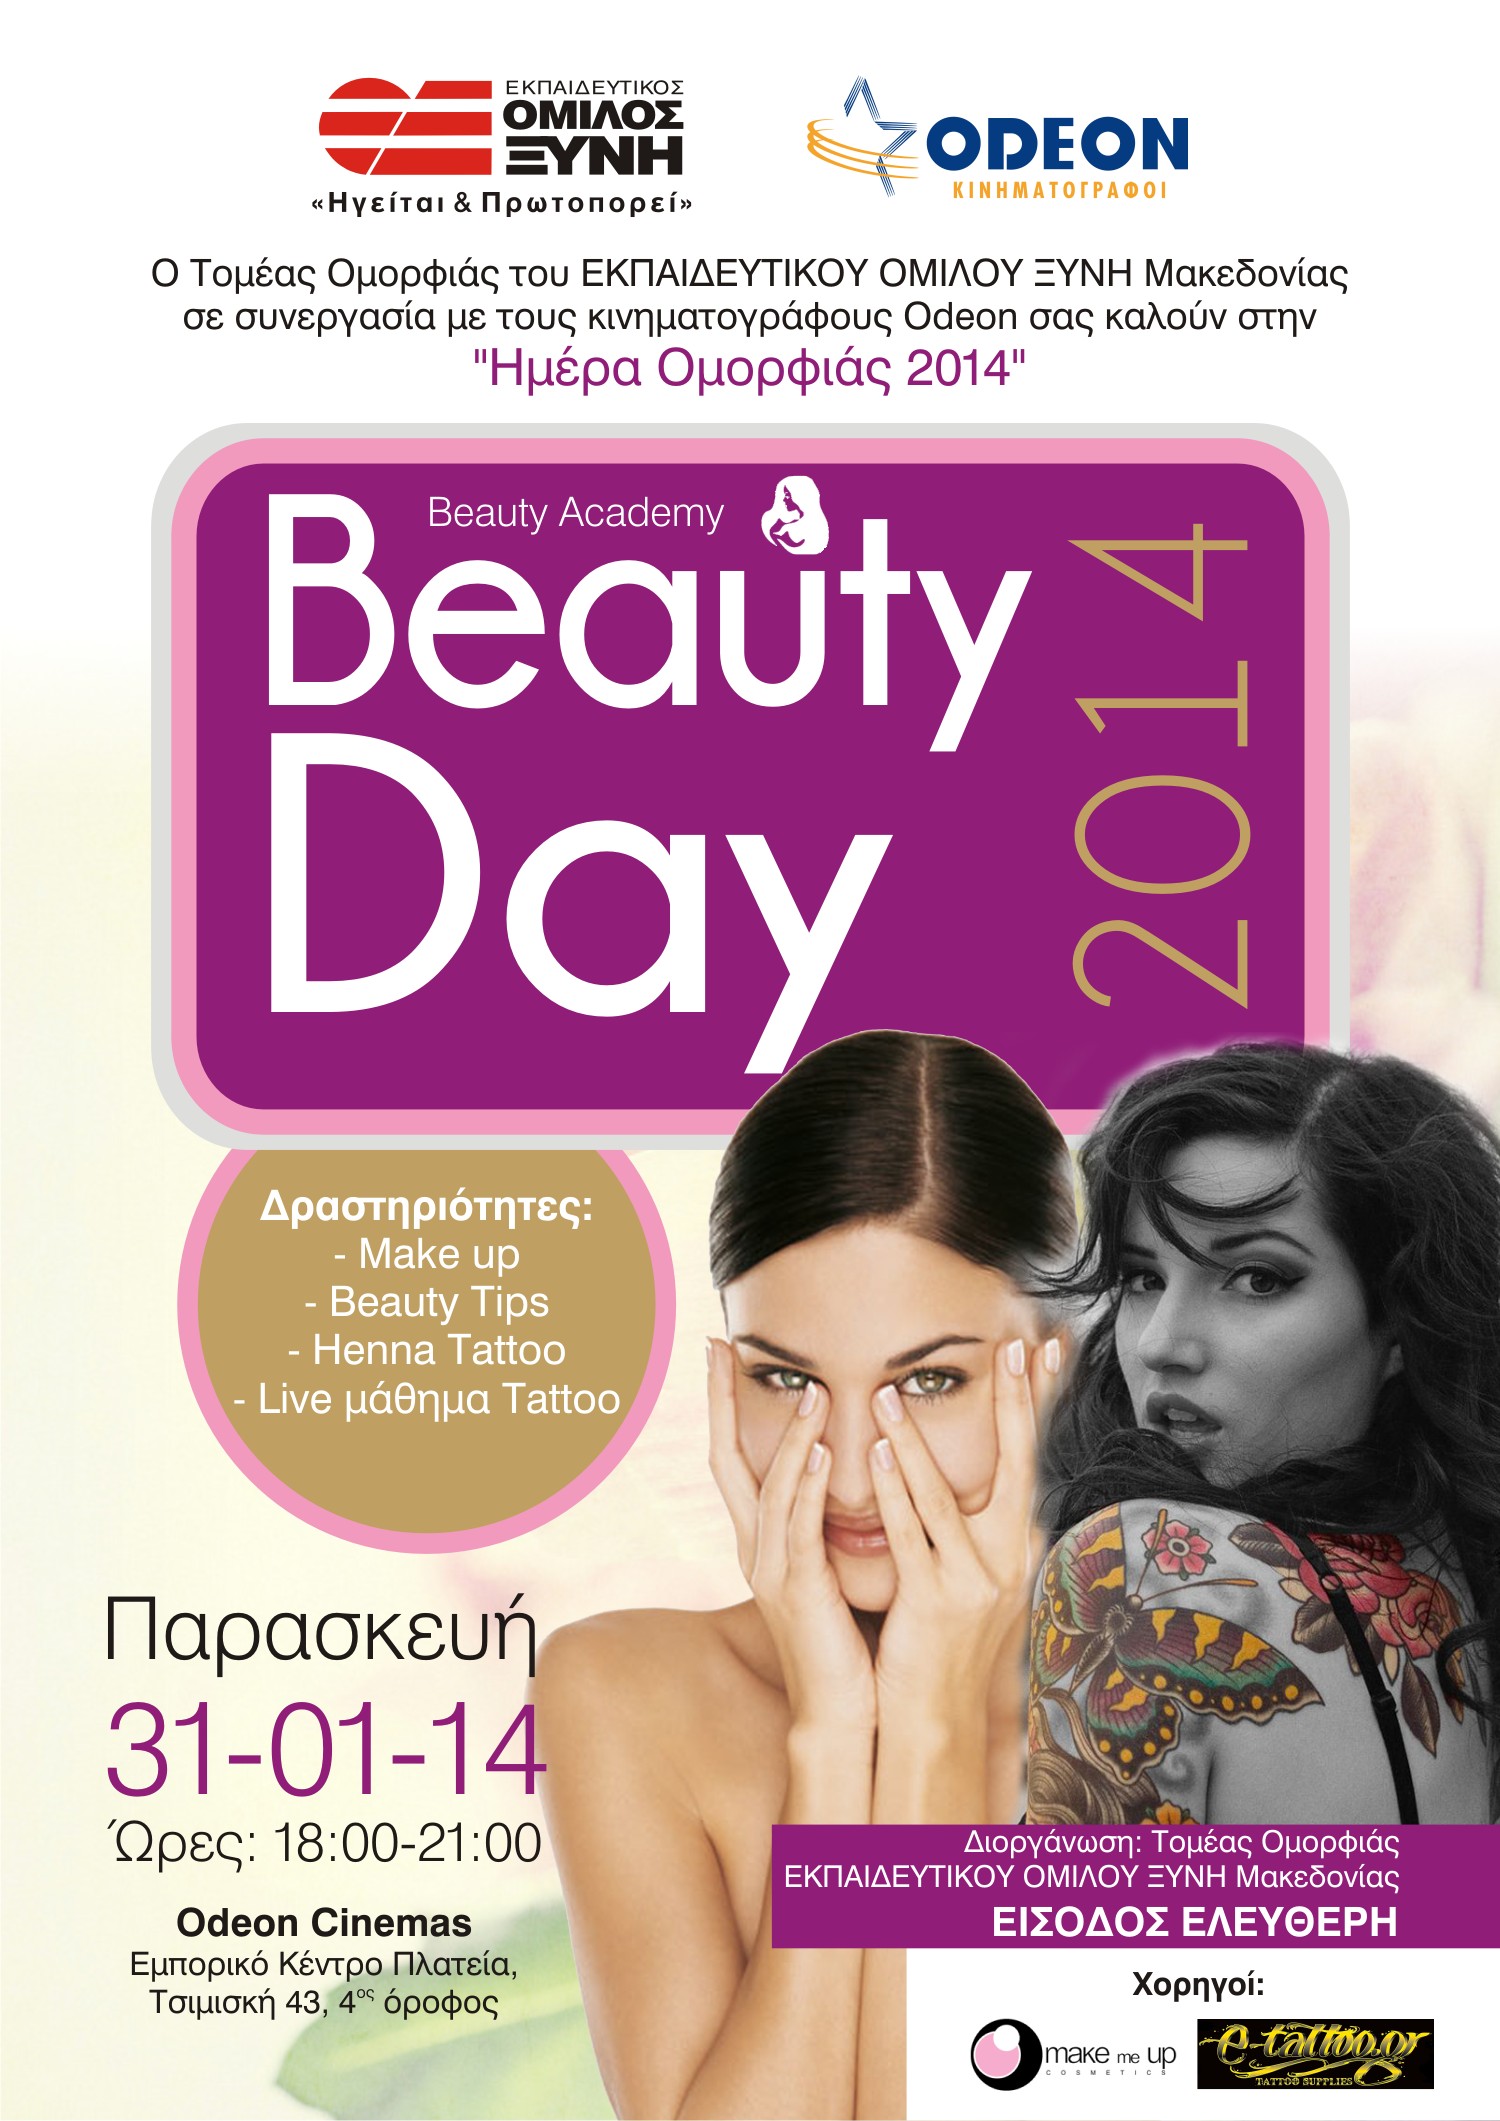 Ο Εκπαιδευτικός Όμιλος ΞΥΝΗ Μακεδονίας & οι Κινηματογράφοι Odeon  σας προσκαλούν στην Ημέρα Ομορφιάς 2014